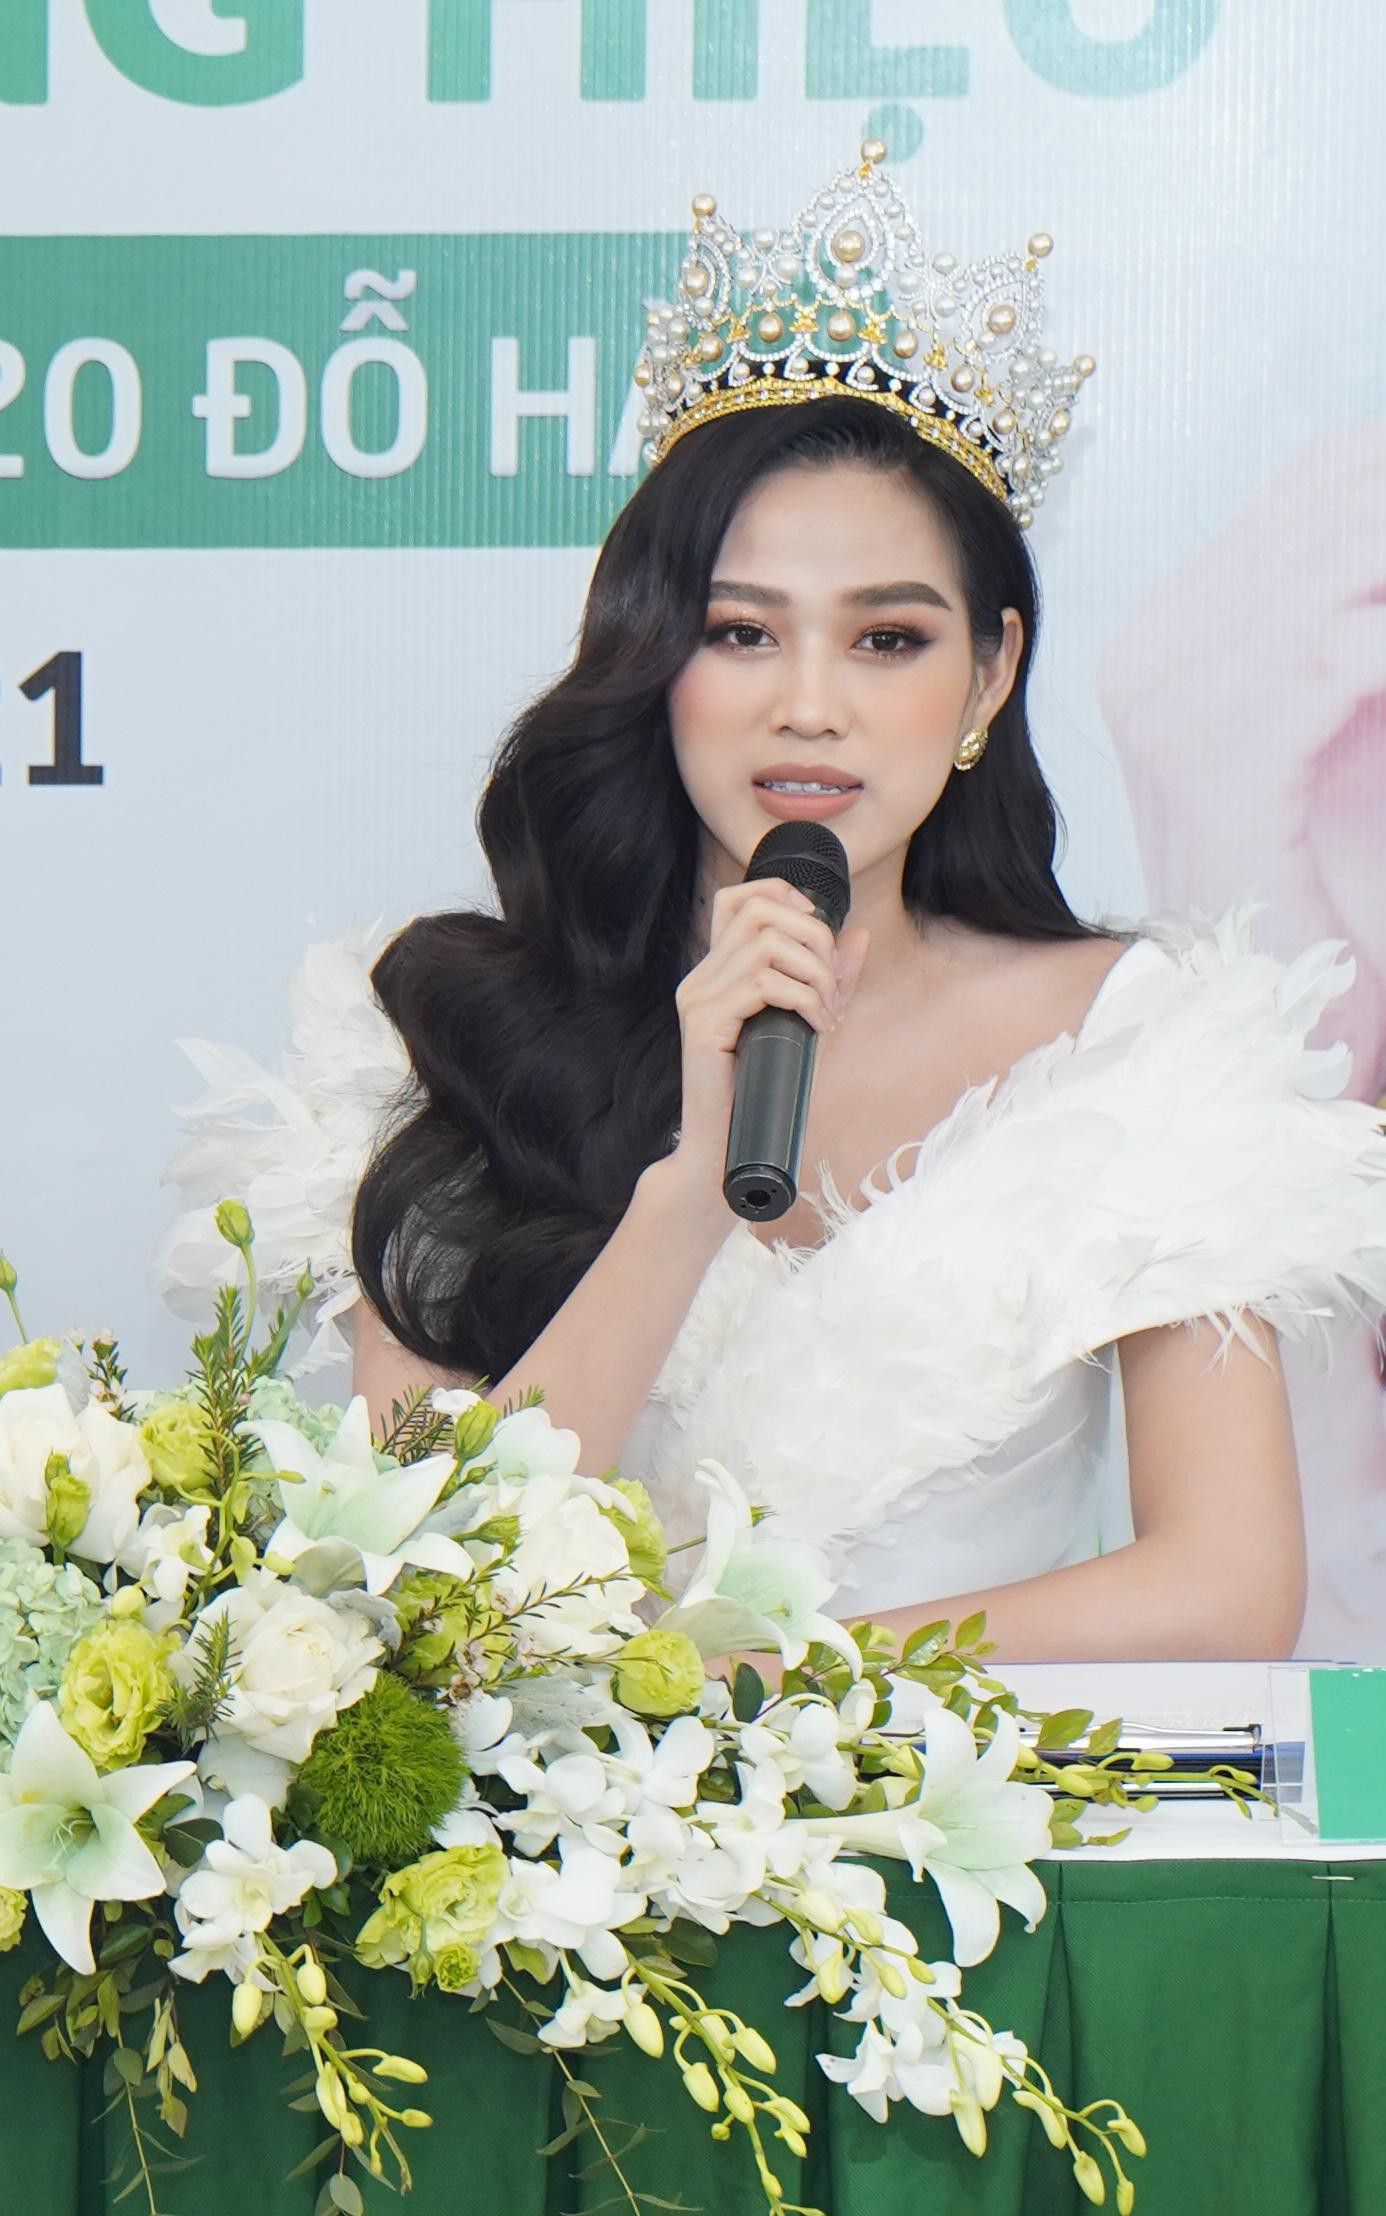 Mới đây nhất trong một sự kiện công bố đại sứ, Hoa hậu Đỗ Thị Hà diện bộ váy dạ hội đính lông vũ trắng muốt vô cùng lộng lẫy.